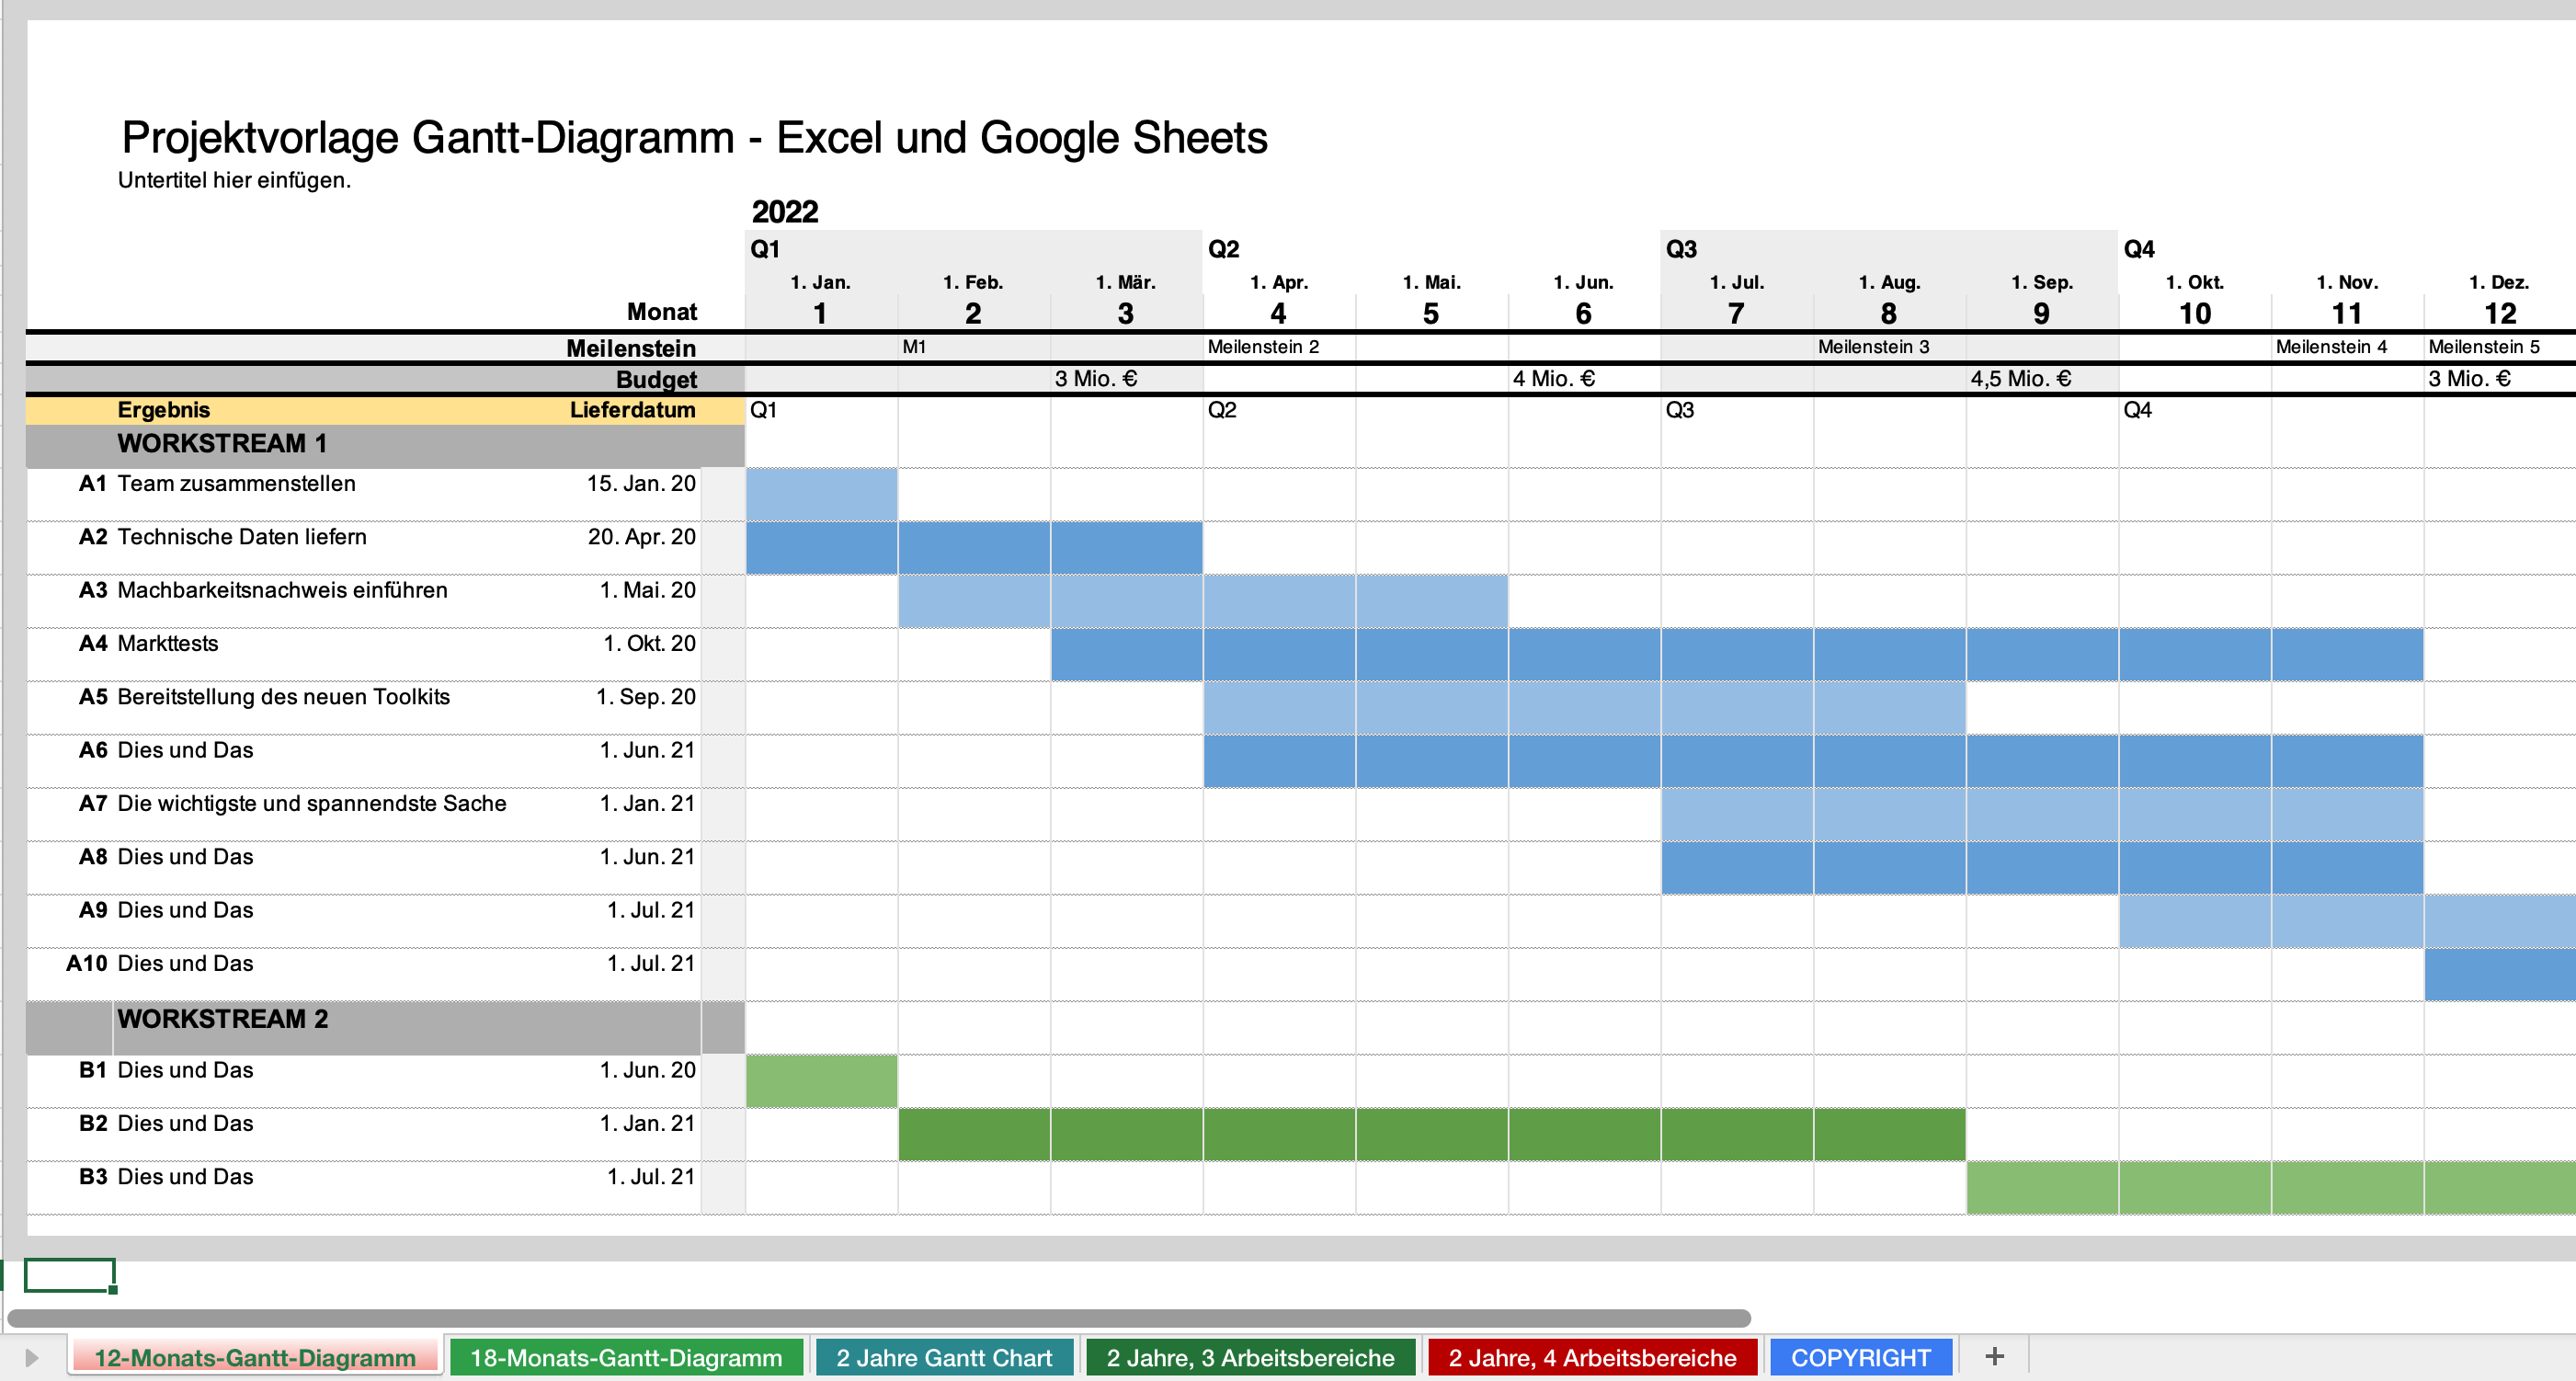 BDUK-333000-DE-Excel-and-Google-Sheets-Gantt-Chart-Template-12-month